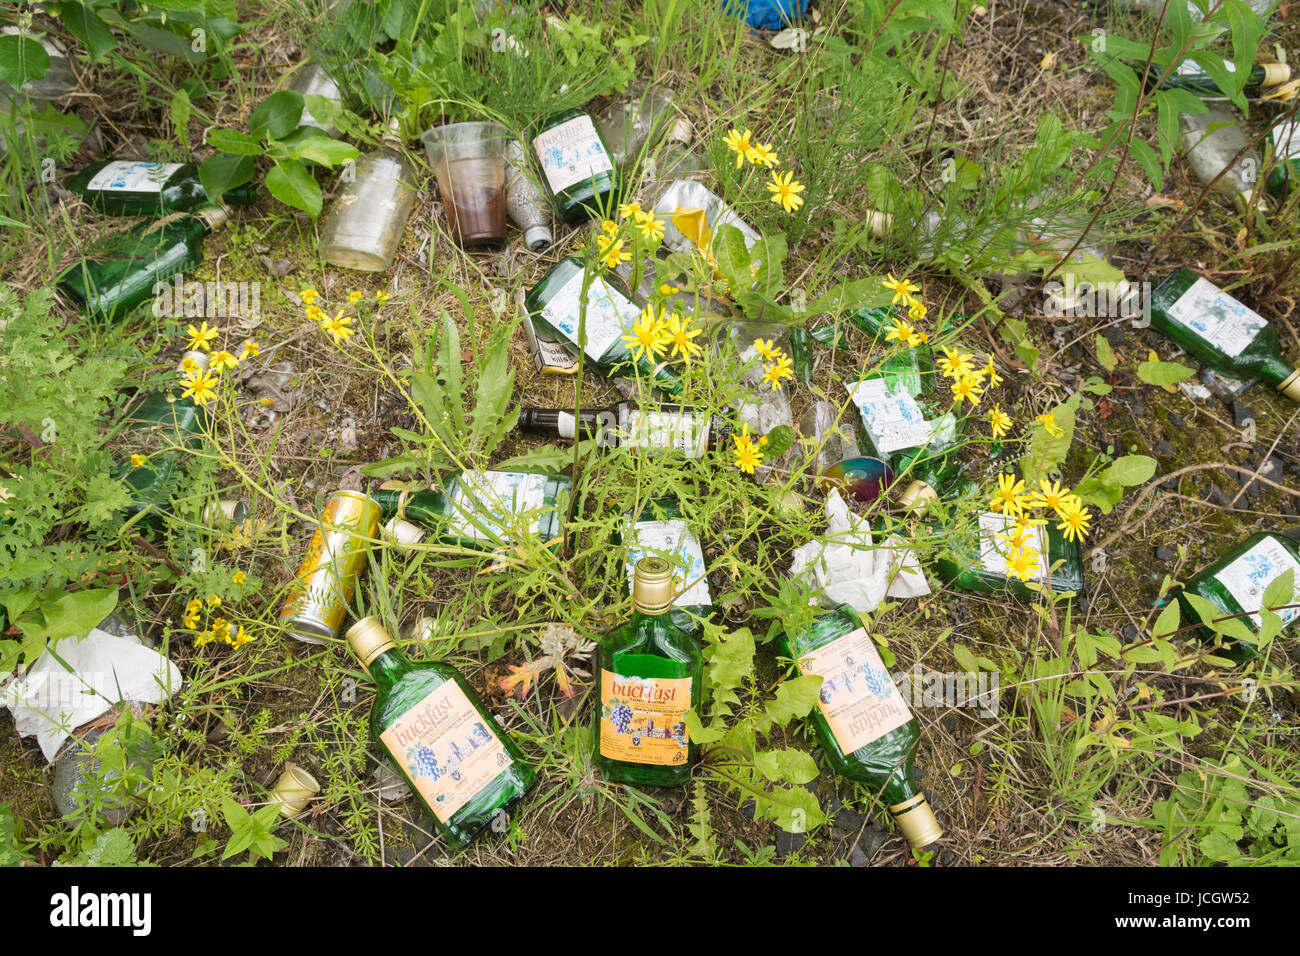 Buckfast Vino tonico - bottiglie vuote littering in Glasgow, Scotland, Regno Unito Foto Stock